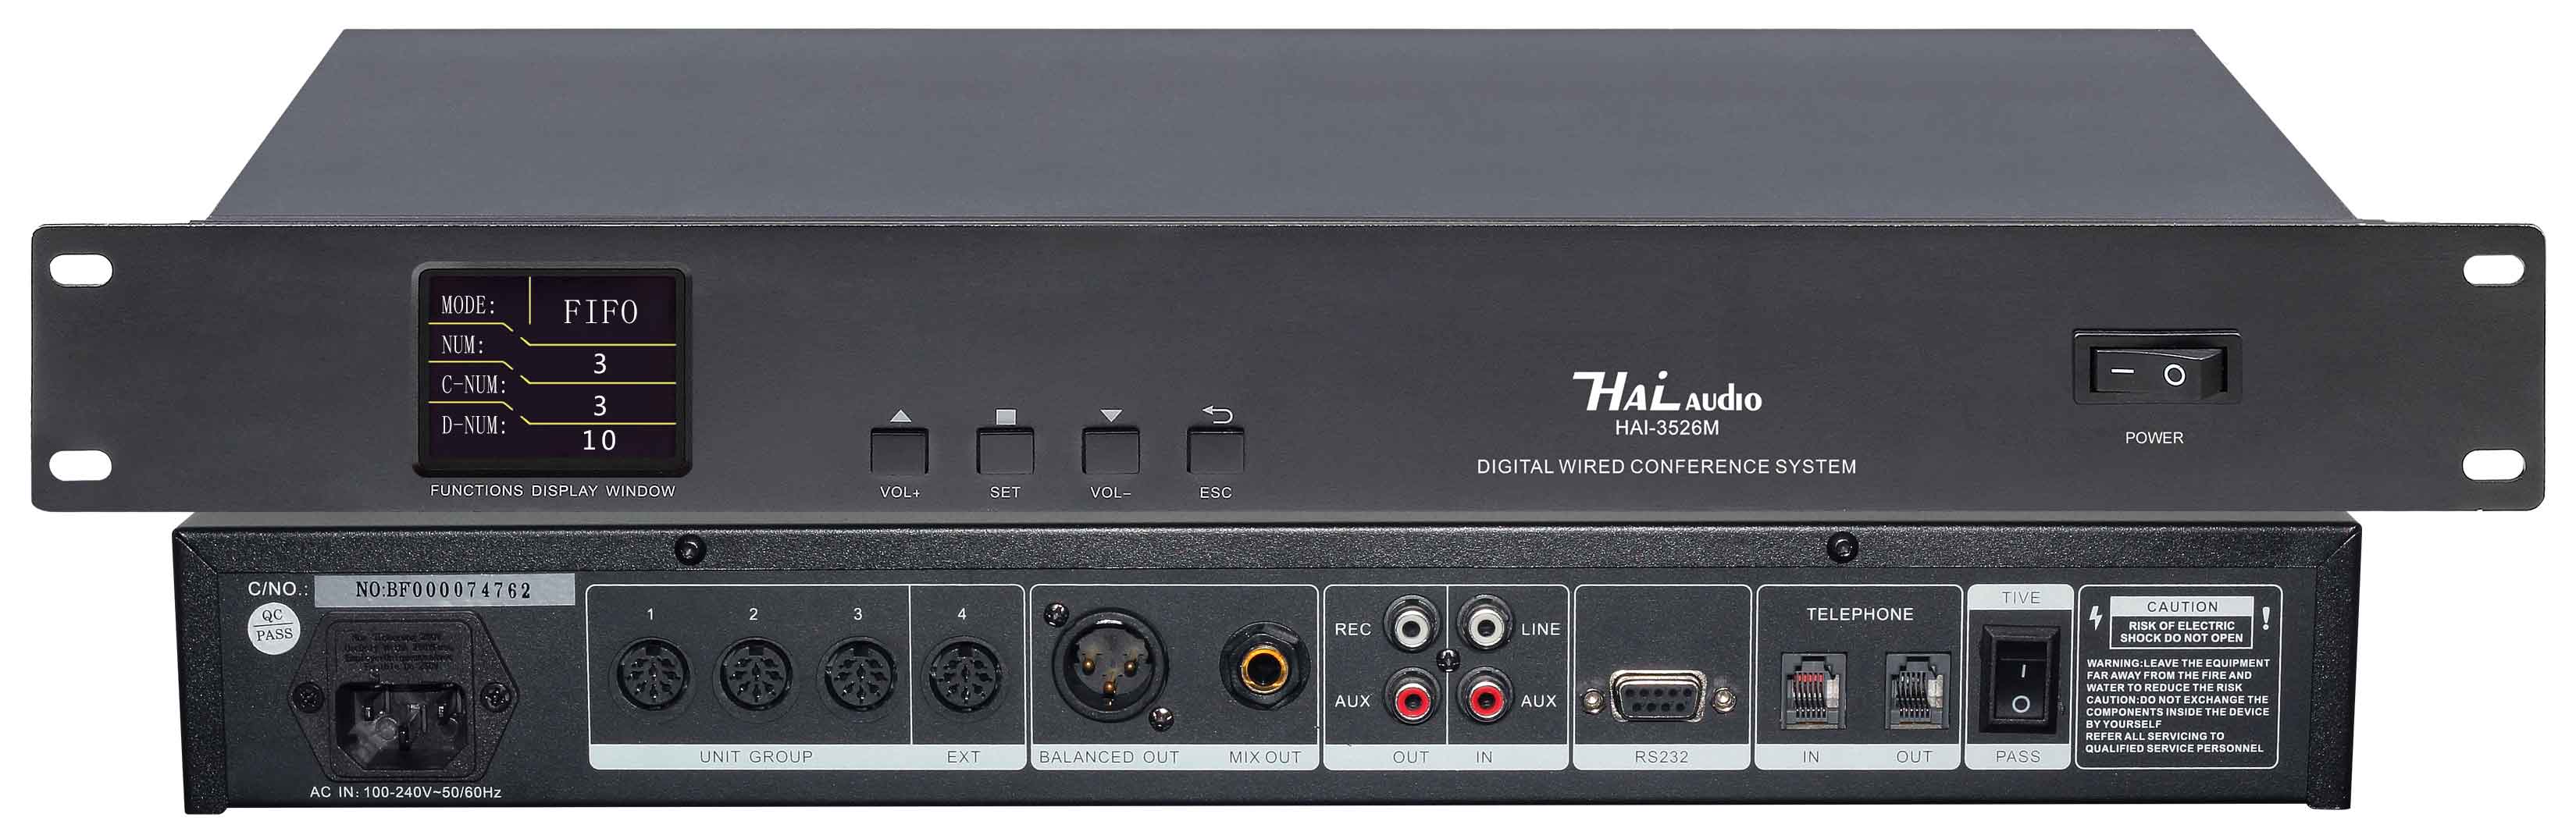 Bộ điều khiển trung tâm Micro chuyên dụng cho hội thảo HAI-3526M